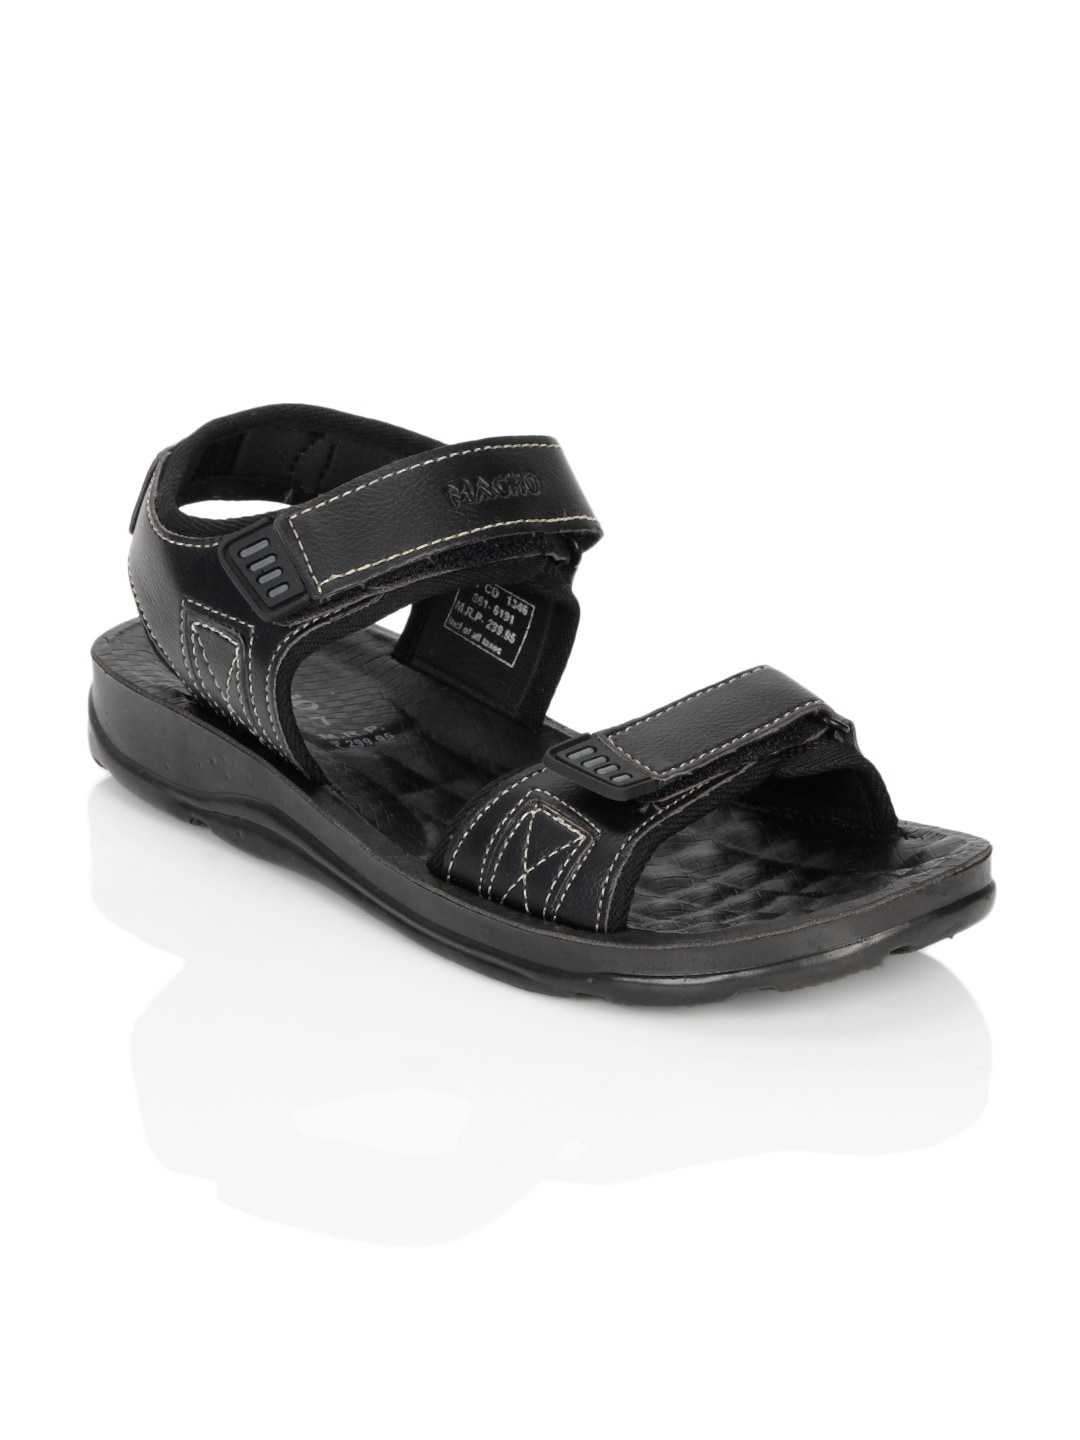 Bata Men Macho Black Sandals